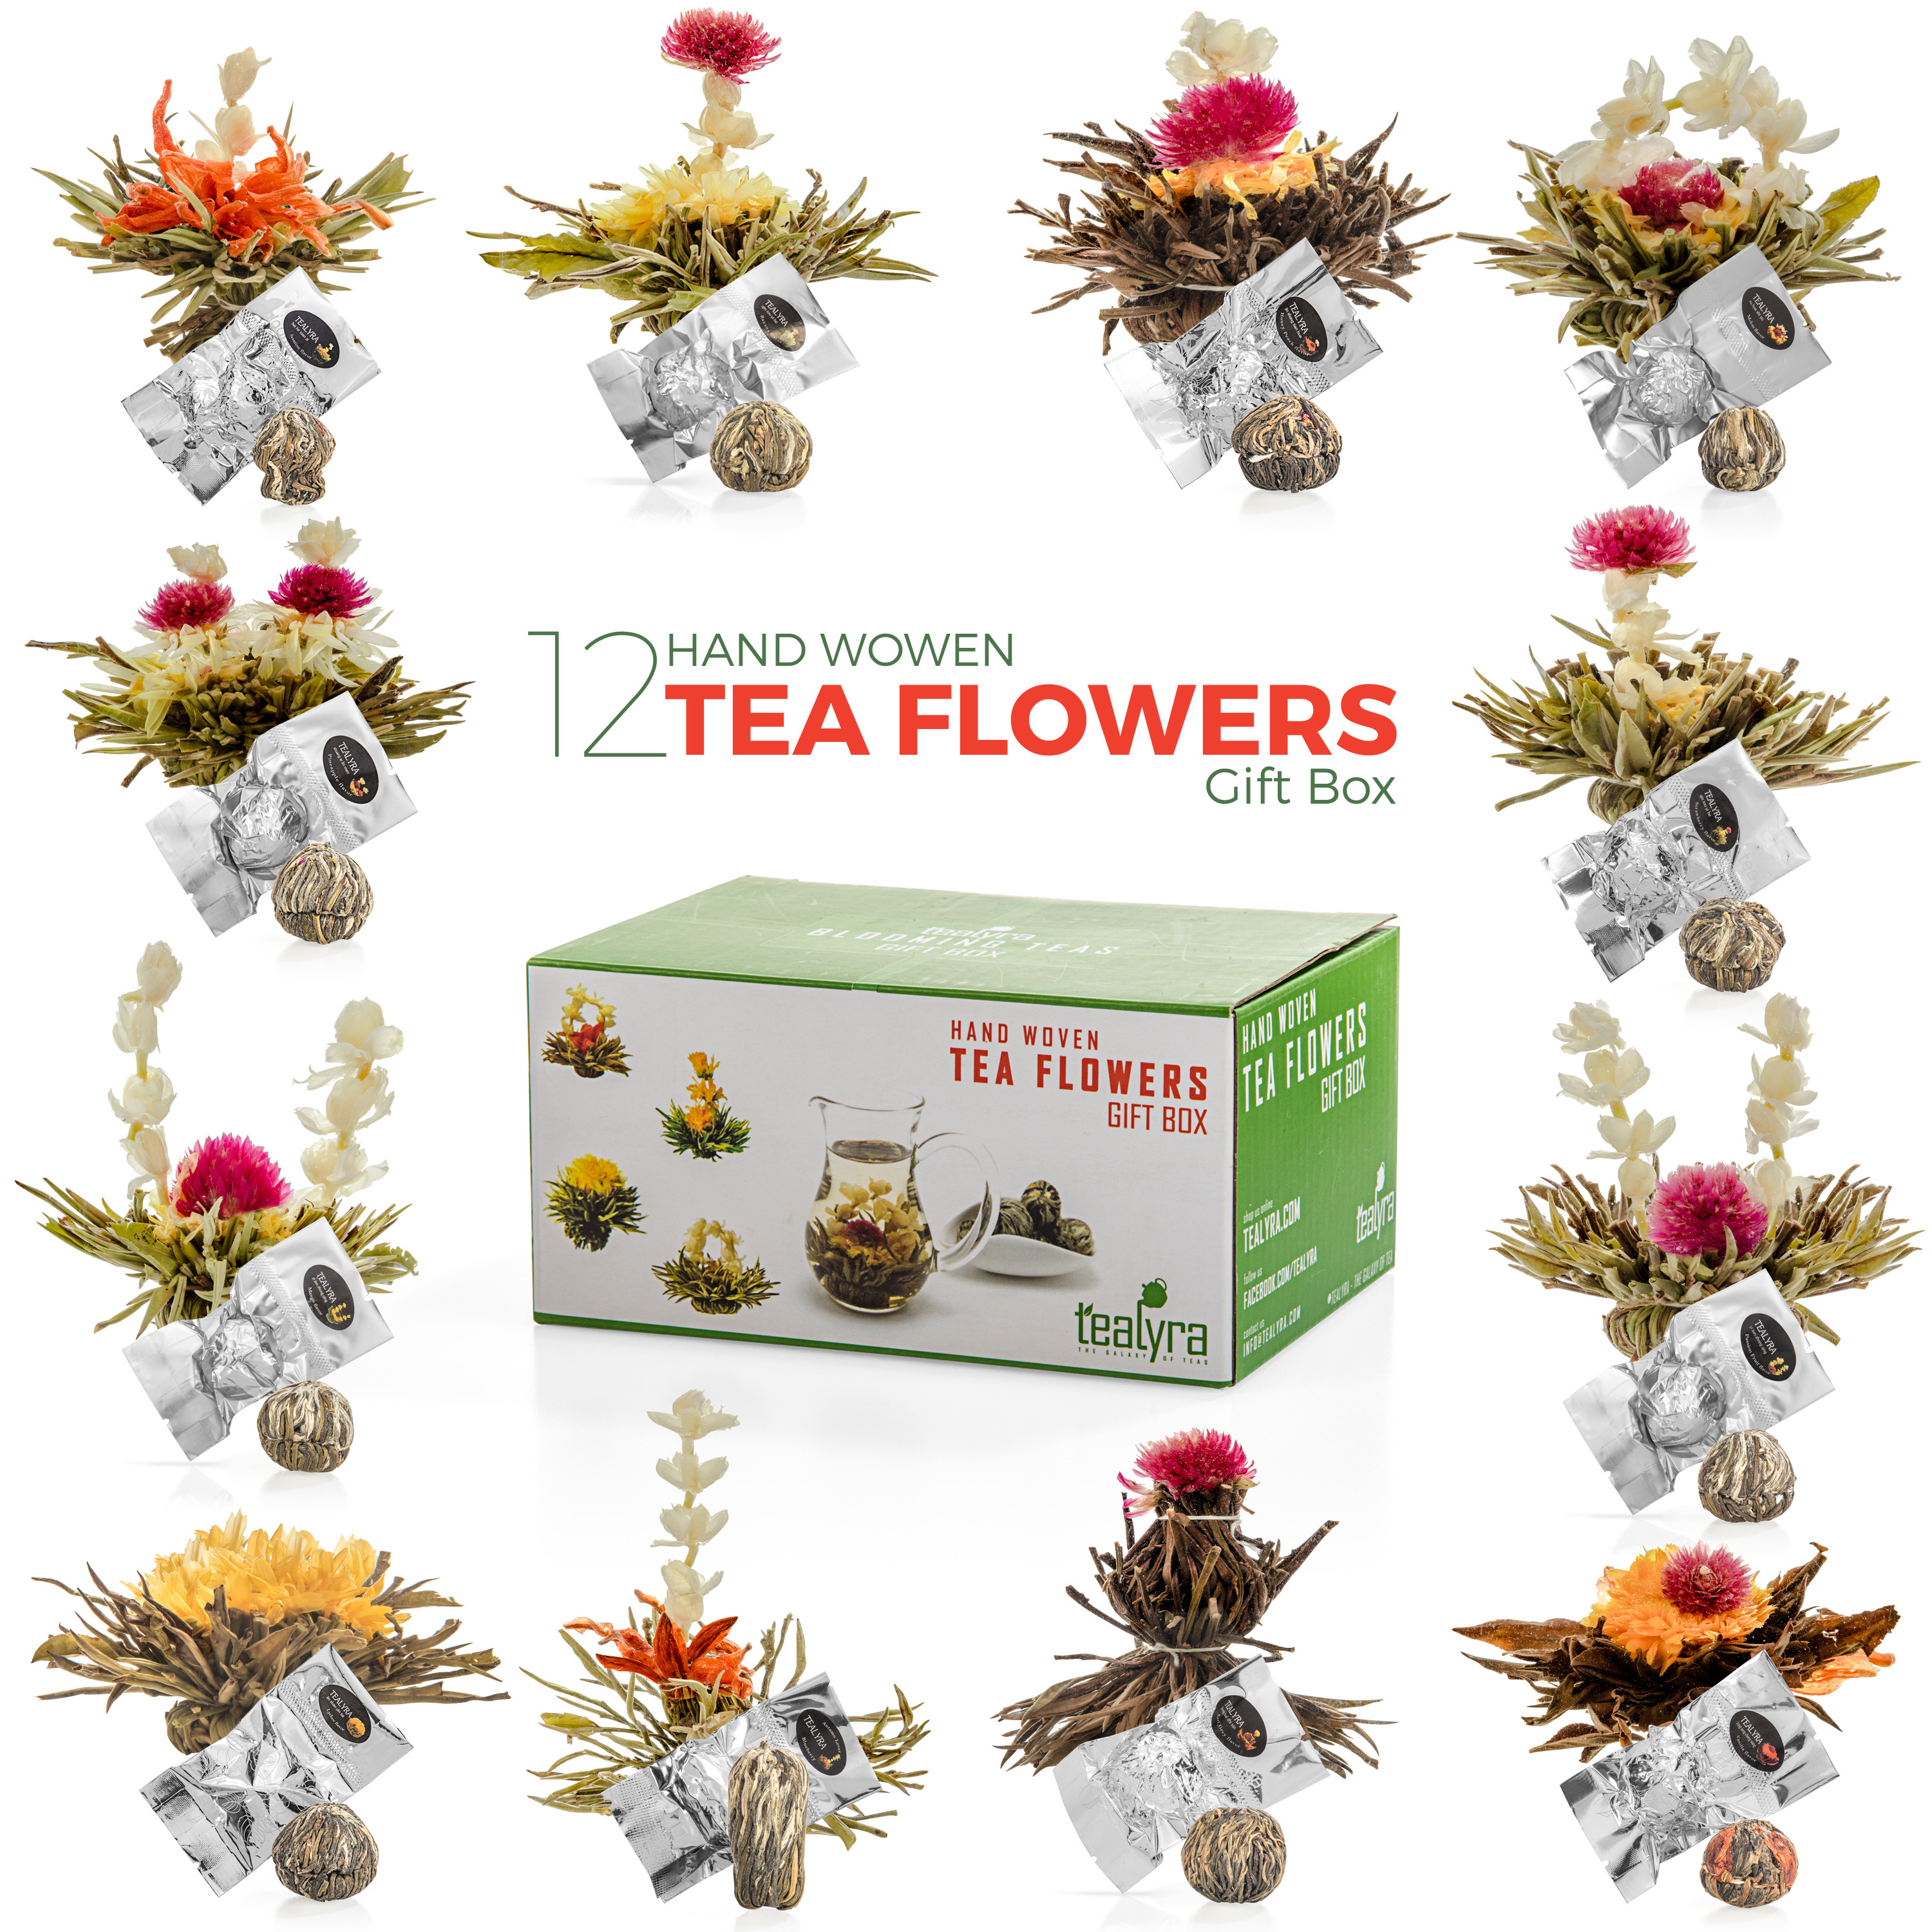 Blooming tea - Flowering tea - Blooming flower tea